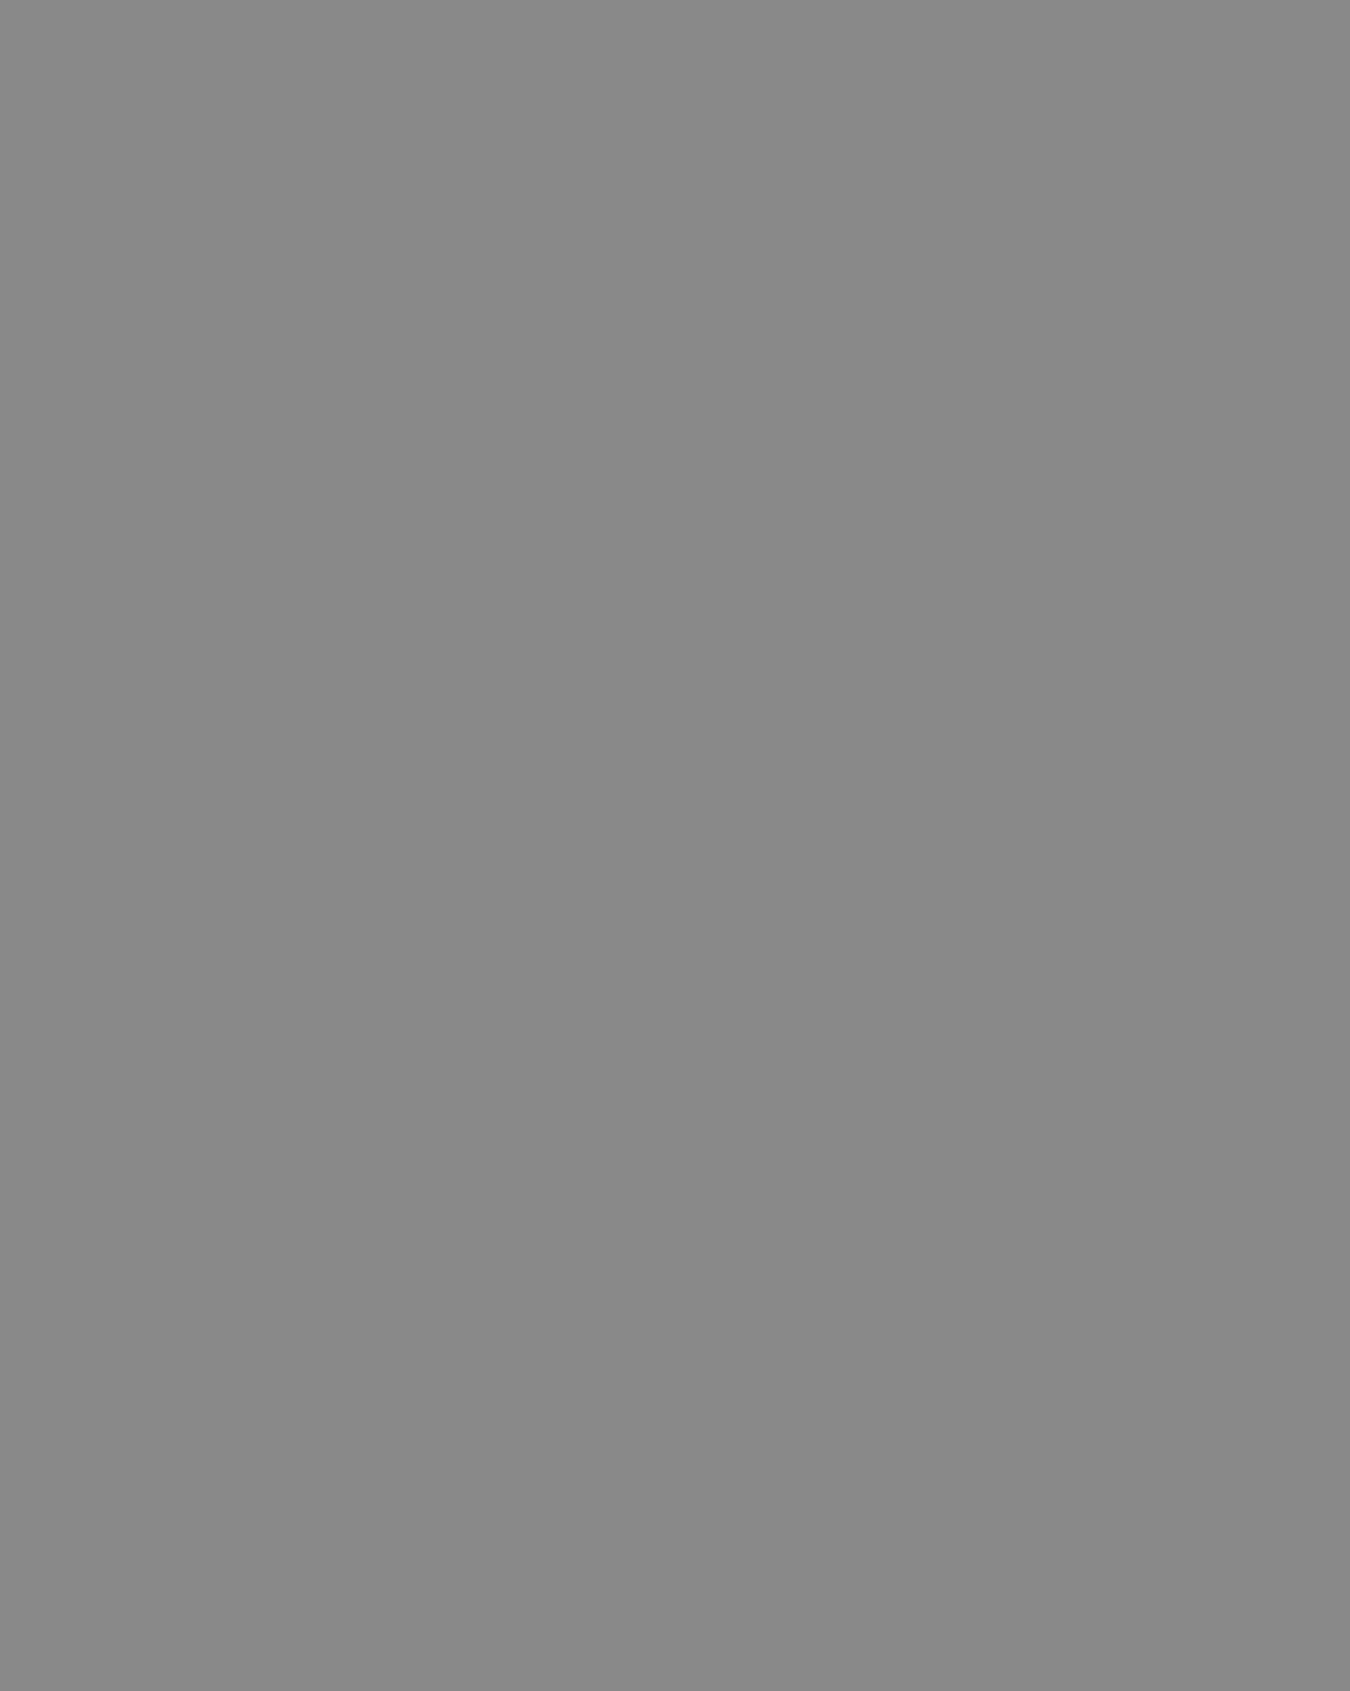 Марина Цветаева. Понтайяк, Франция, 1928 год. Фотография: Музейное объединение «Музеи наукограда Королев», Королев, Московская область